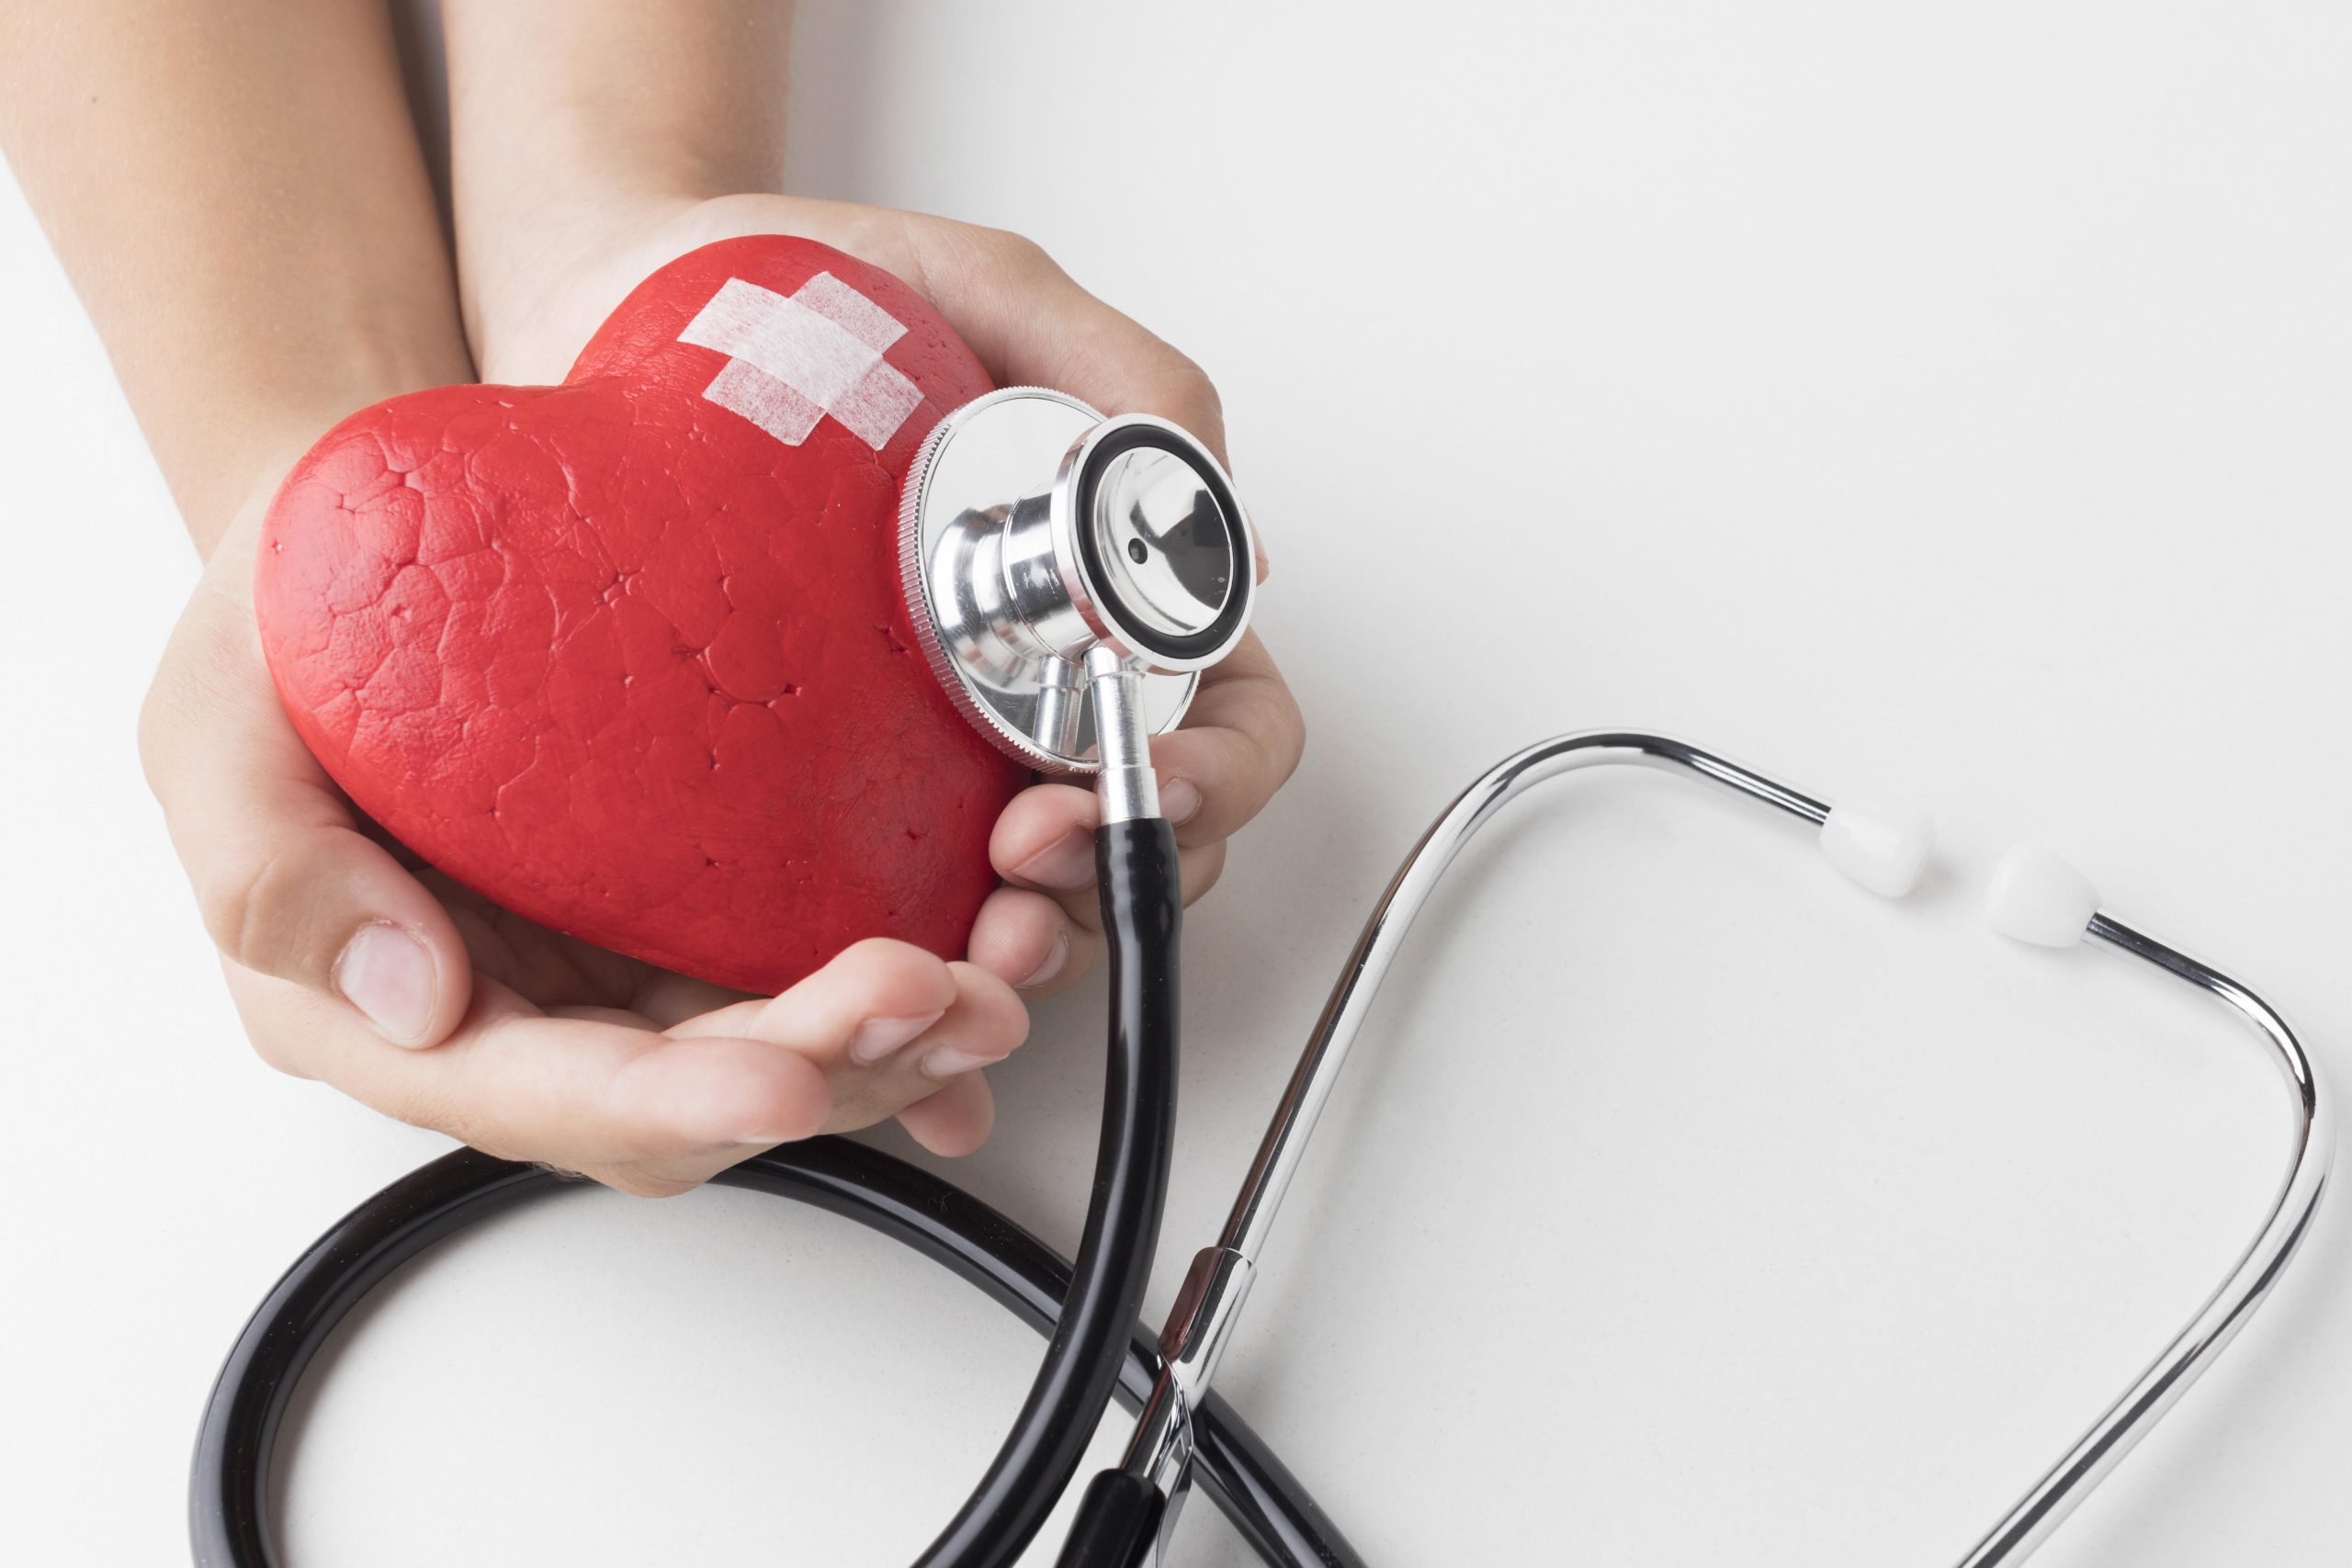 Dispositivo de baixo custo inova o diagnóstico de doenças cardíacas